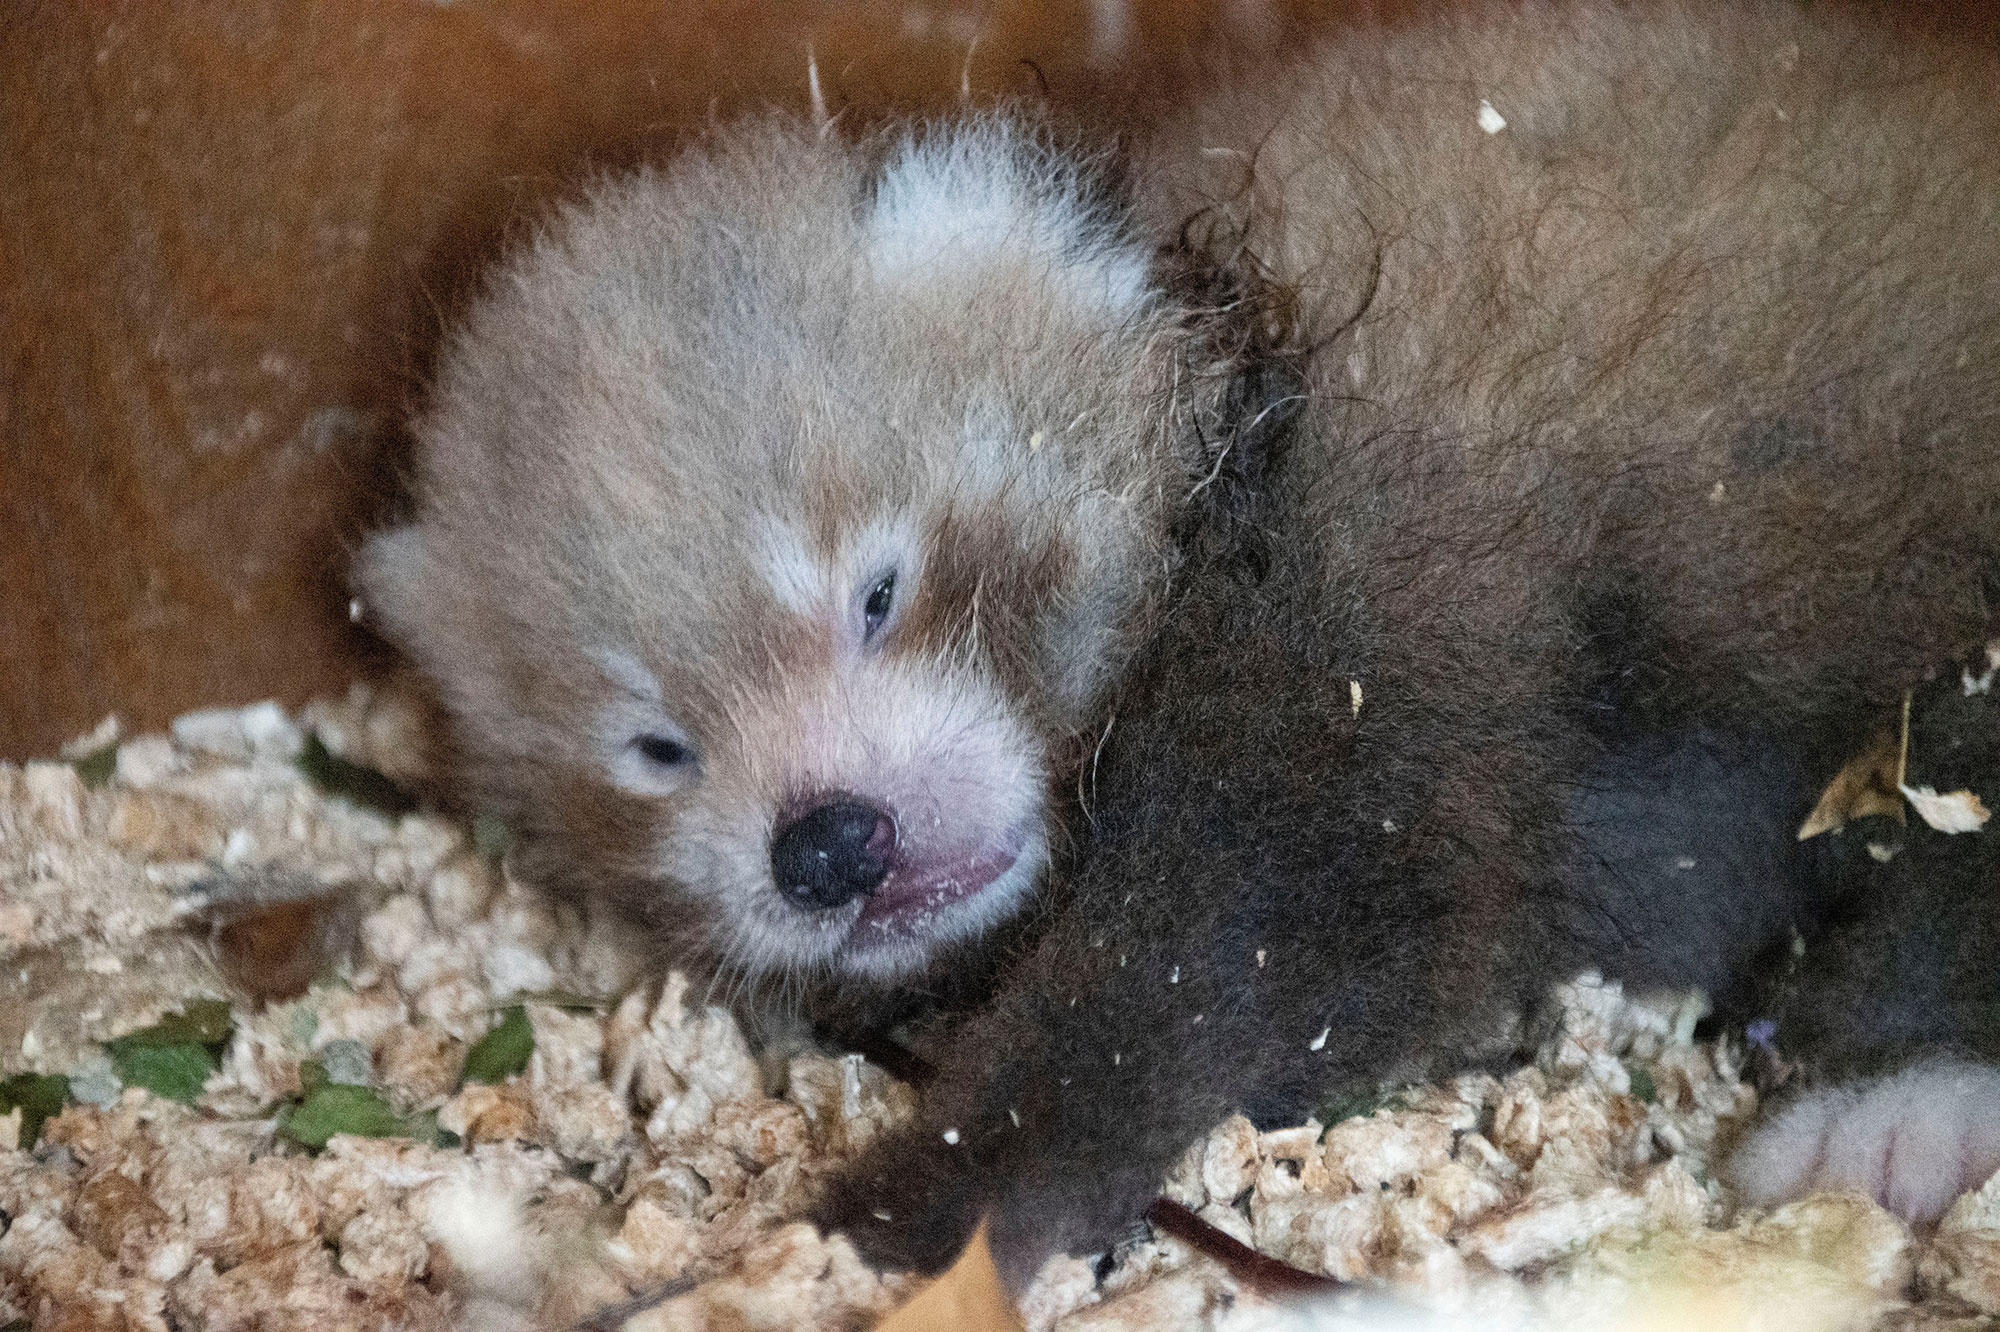 L'adorable naissance de Little Red, petit panda roux, en Angleterre